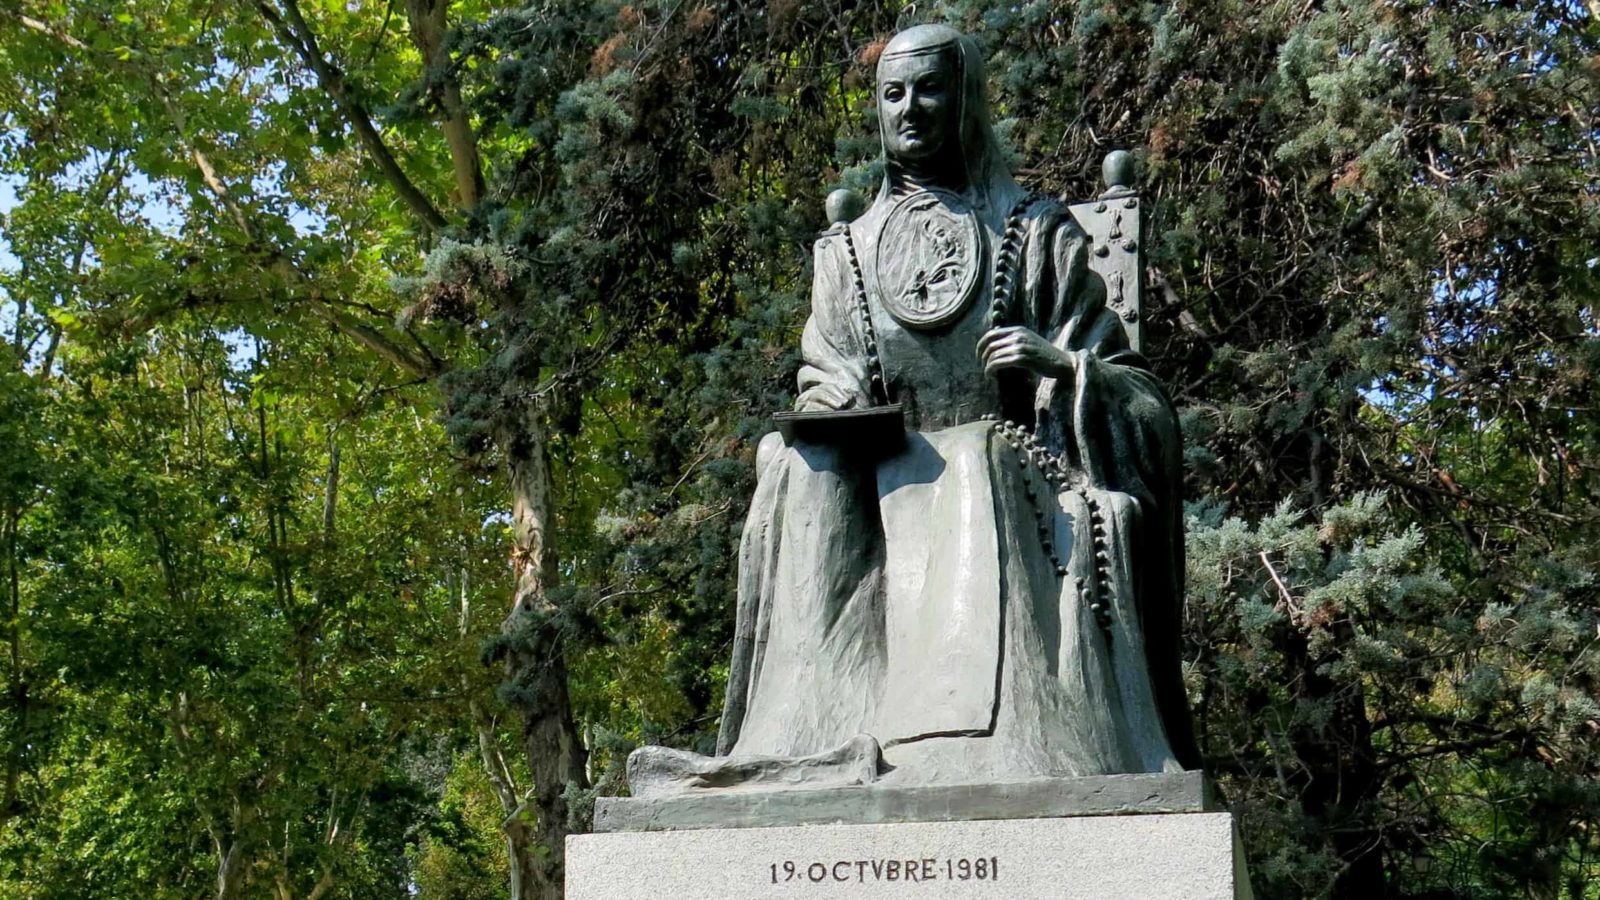 A sculpture in Madrid honors sor Juana Inés de la Cruz. Creative Commons courtesy photo